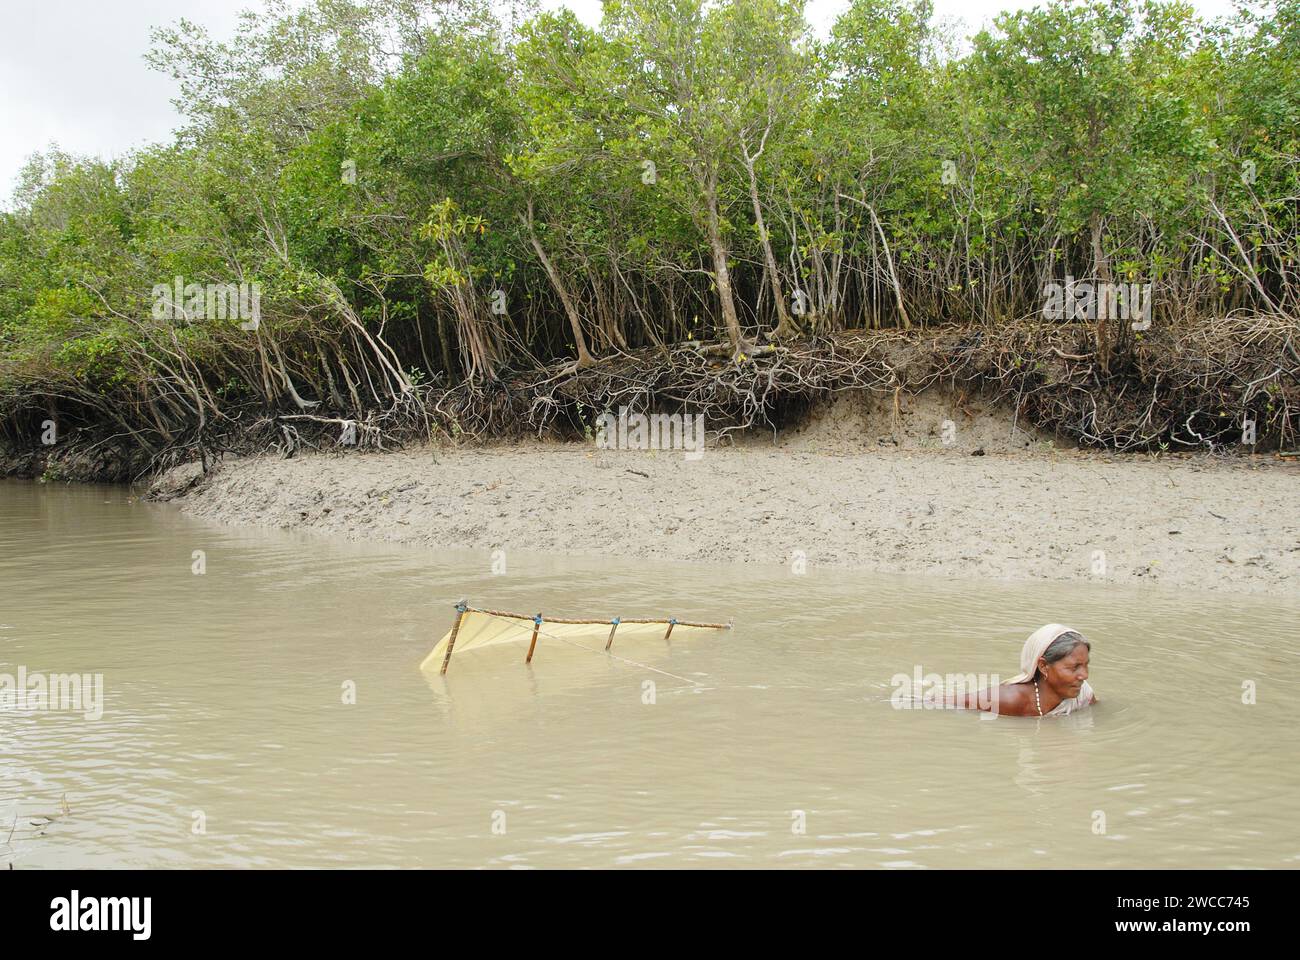 Frauen sammeln Garnelensamen aus dem Salzfluss des Sundarban-Deltas. Unter den Dorfbewohnern herrscht die Armut, dass etwa 60.000 Familien regelmäßig in das brusthohe Wasser der Flüsse von Sundarbans gehen, um nach Garnelensamen (Bagda) zu suchen, wo sie oft Opfer von Haifischbissen werden und Hautkrankheiten fangen. Das Leben in den Sundarbans, dem größten Delta der Welt, dreht sich um den Kampf um das Überleben, sei es um Nahrung, Zuflucht oder um die Flucht vor Menschenfressern. Gosaba, Sundarban, Westbengalen, Indien. Stockfoto